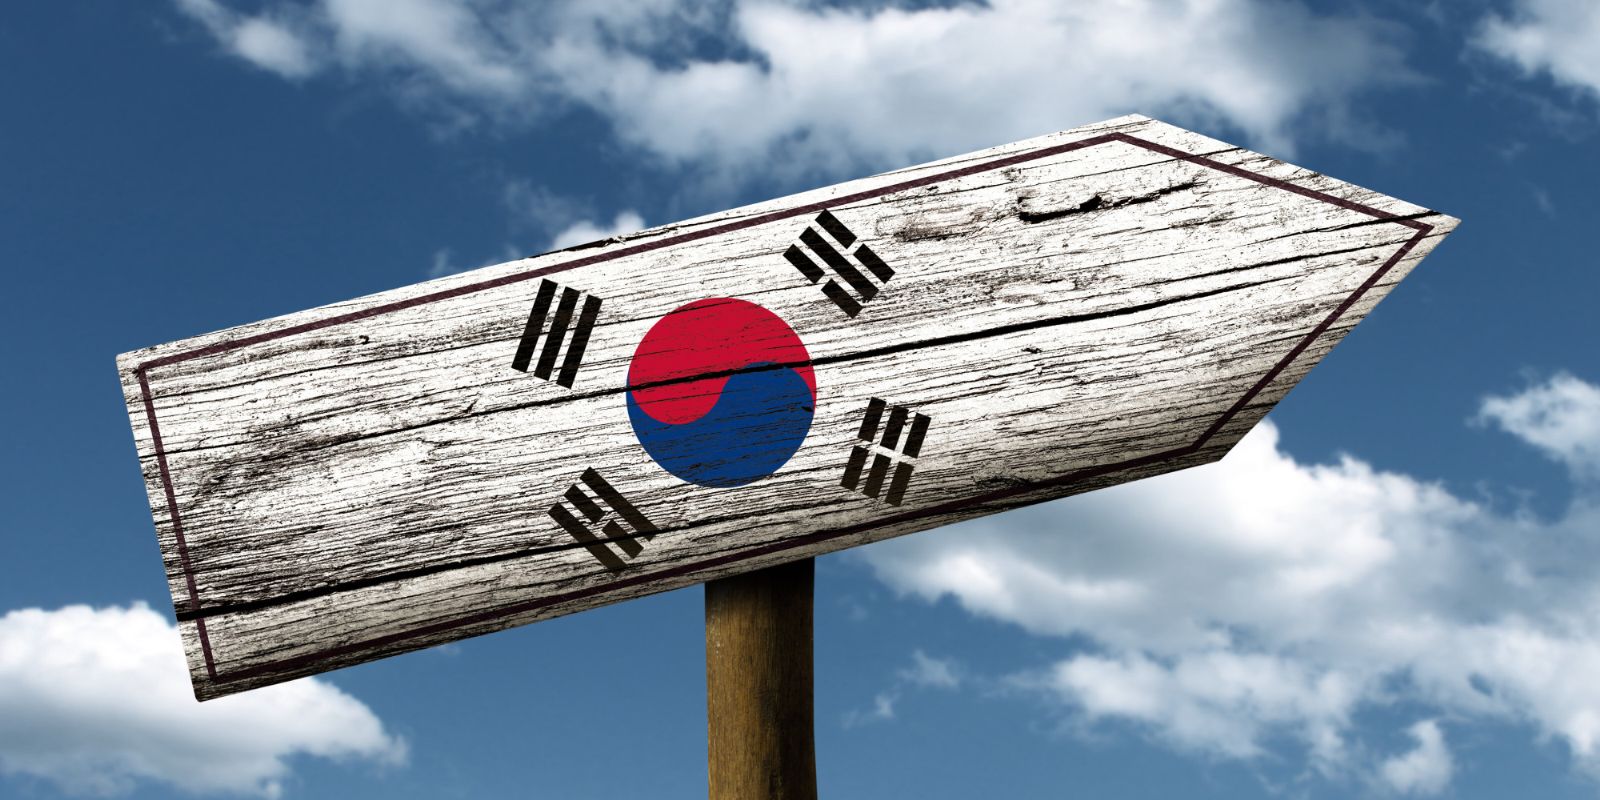  Dịch thuật tiếng Hàn Quốc giá rẻ - chuyên nghiệp uy tín